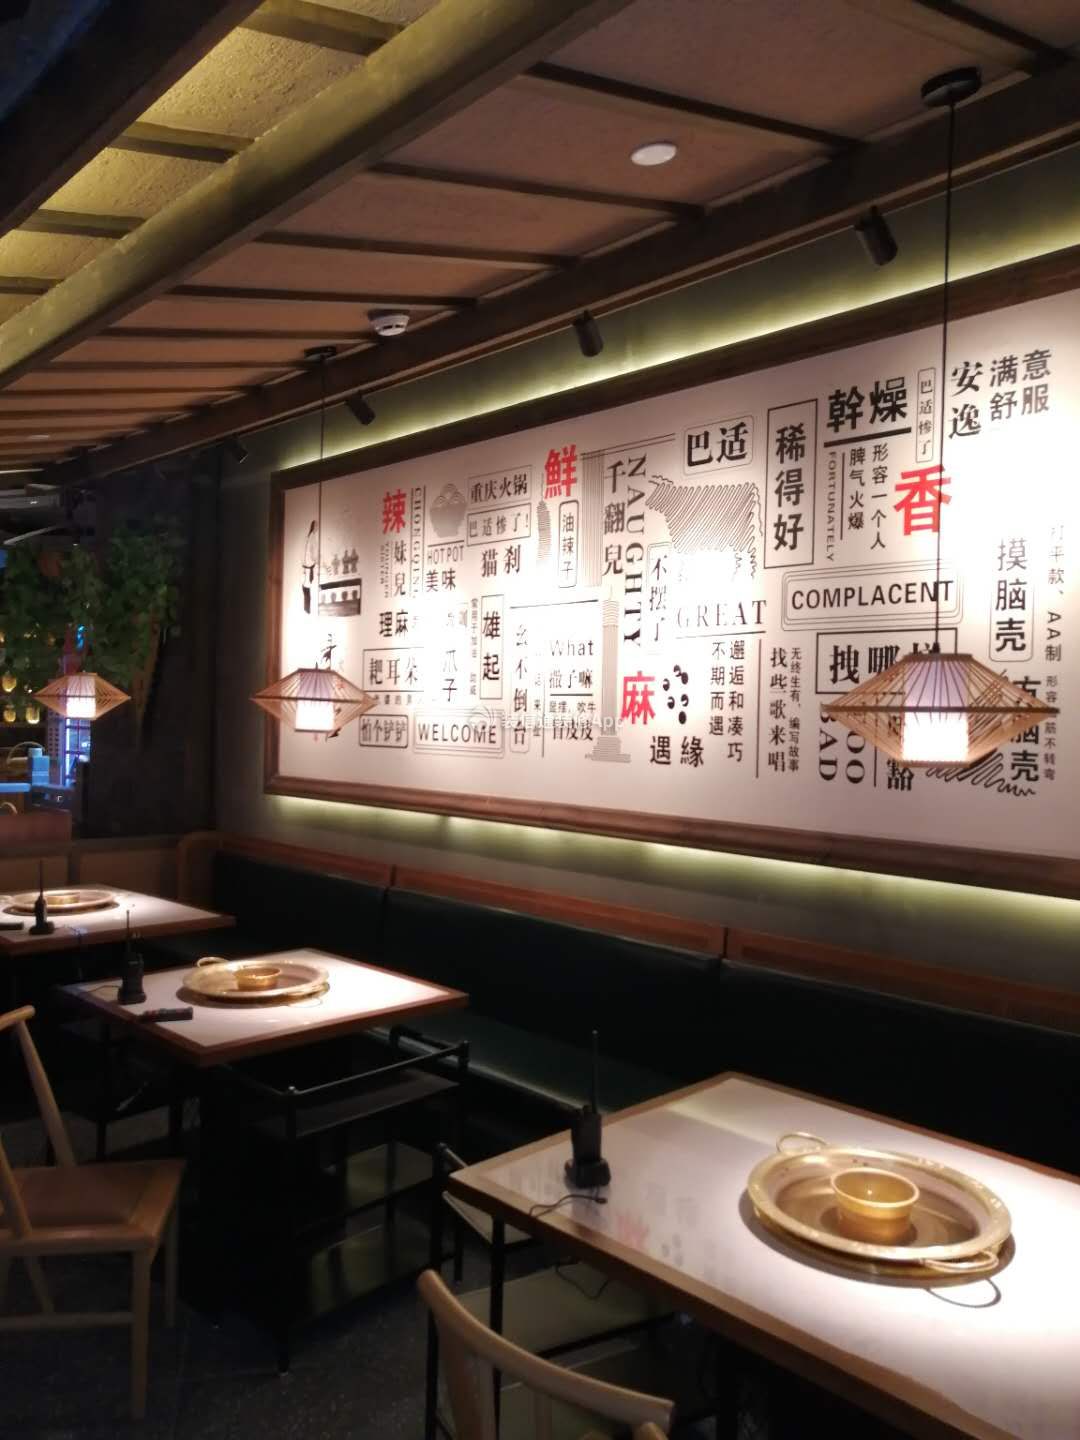 中式风格668平米火锅店大厅文化墙装修实景图